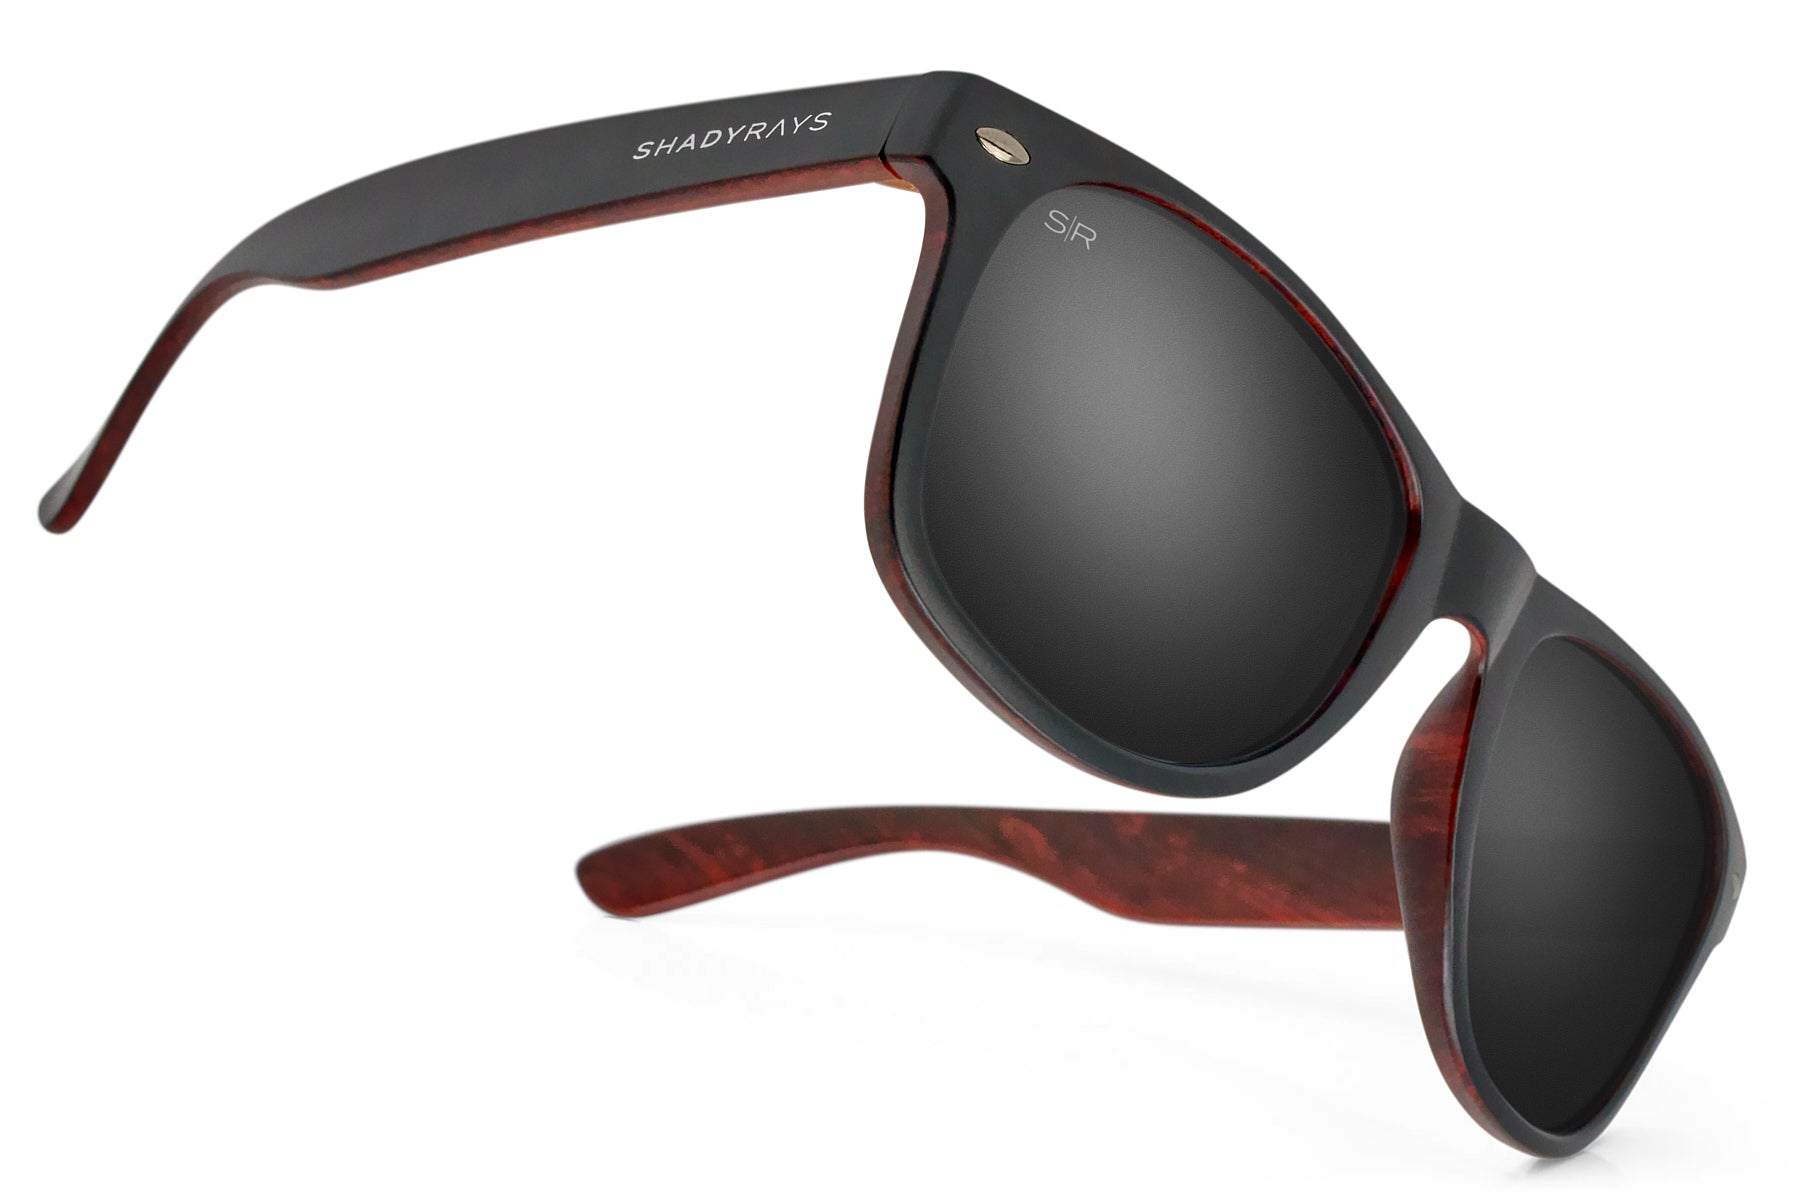 Cookshark Brand Men's Sunglasses Polarized Driving Hipster 8016  Polarized  sunglasses men, Mens sunglasses, Mens sunglasses fashion